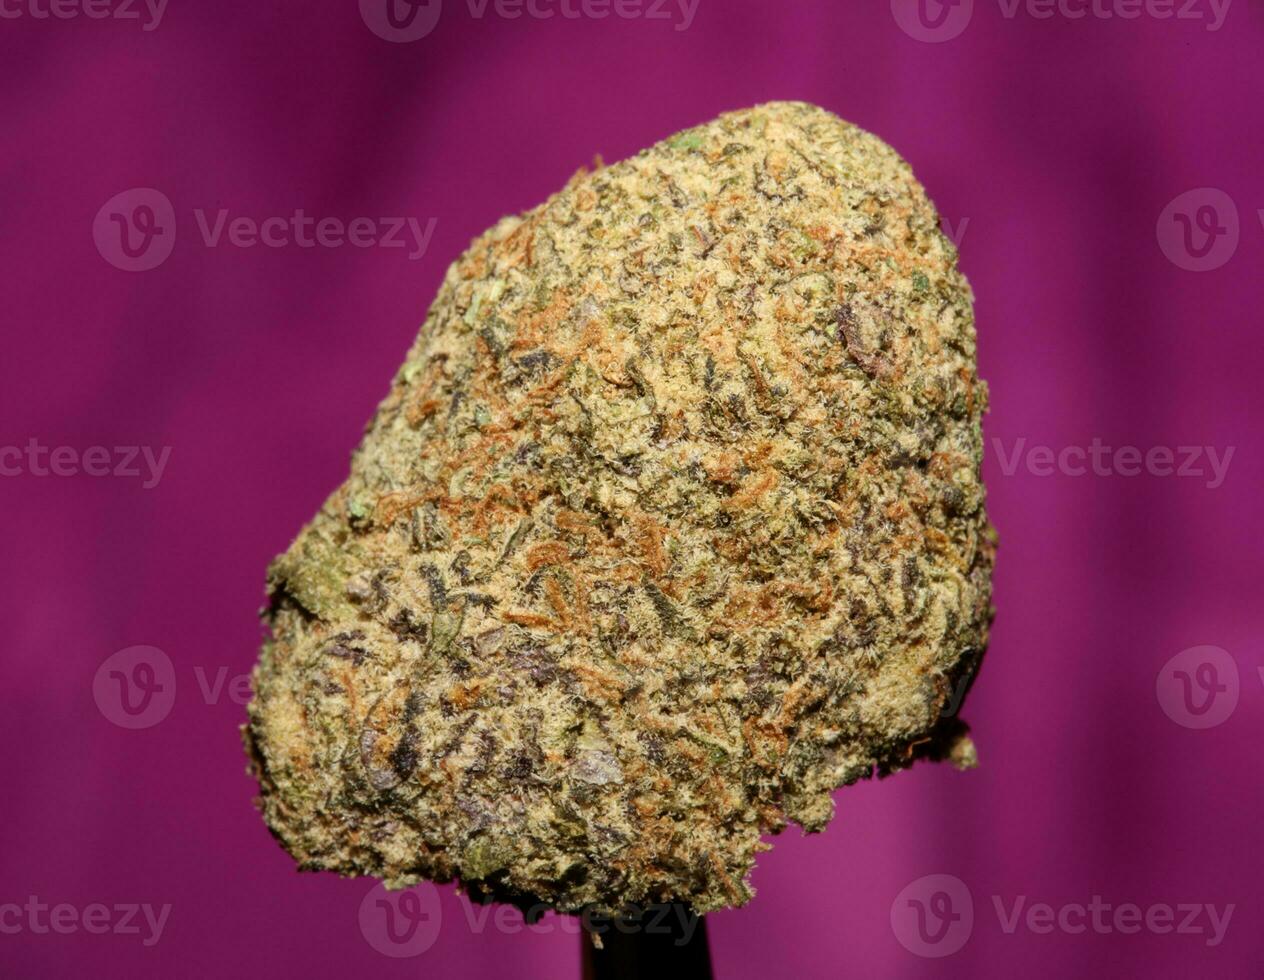 fechar acima do cali surpreendente maciço floração médico maconha brotos detalhe do cannabis em roxa fundos grande Tamanho Alto qualidade instante impressões foto